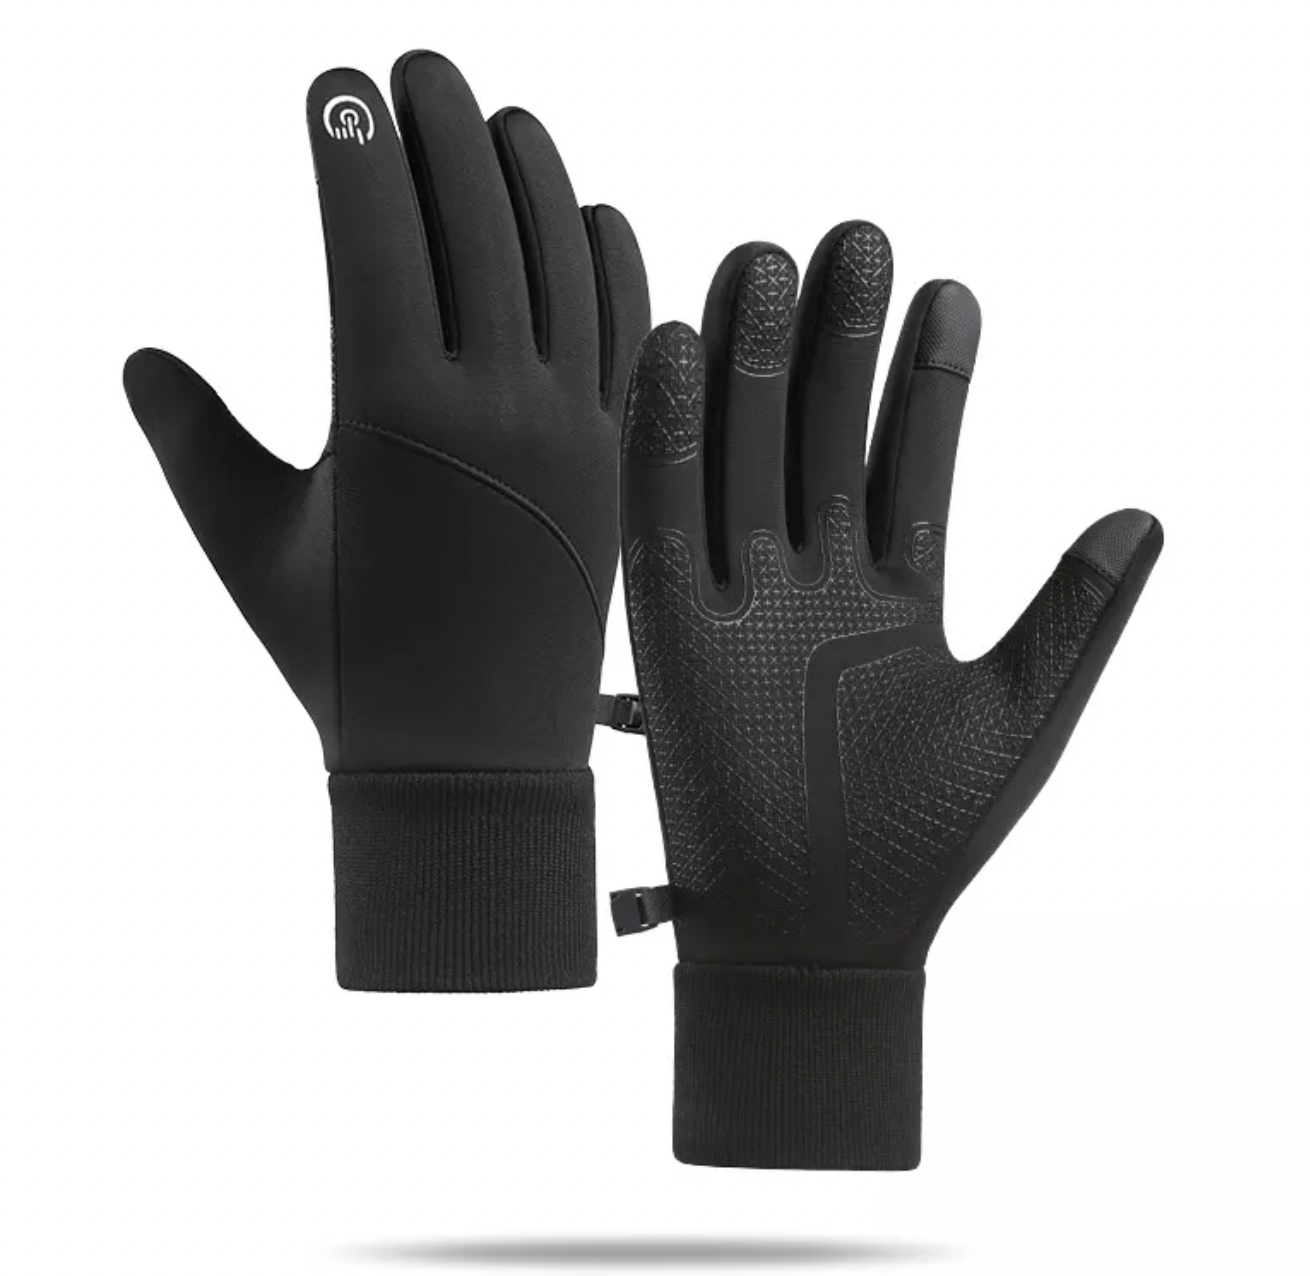 Vattentäta touchvantar / handskar - Har du kalla och frusna händer på vintern?